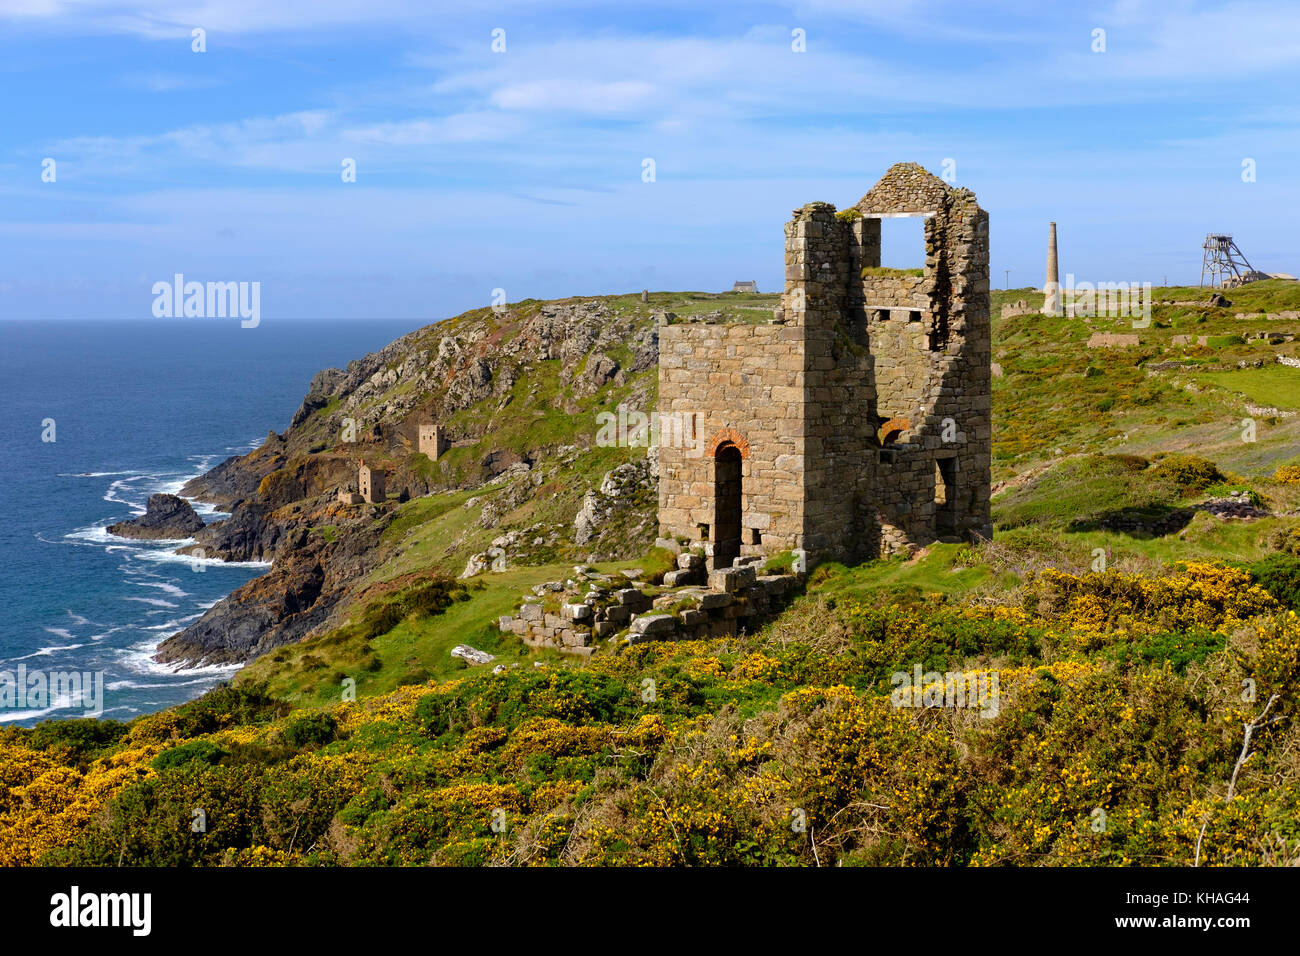 Felsige Küste mit Ruinen, Ehemalige Mine, alte Zinnmine, botanische Lack Mine, St Just in penwith, Cornwall, England, Großbritannien Stockfoto